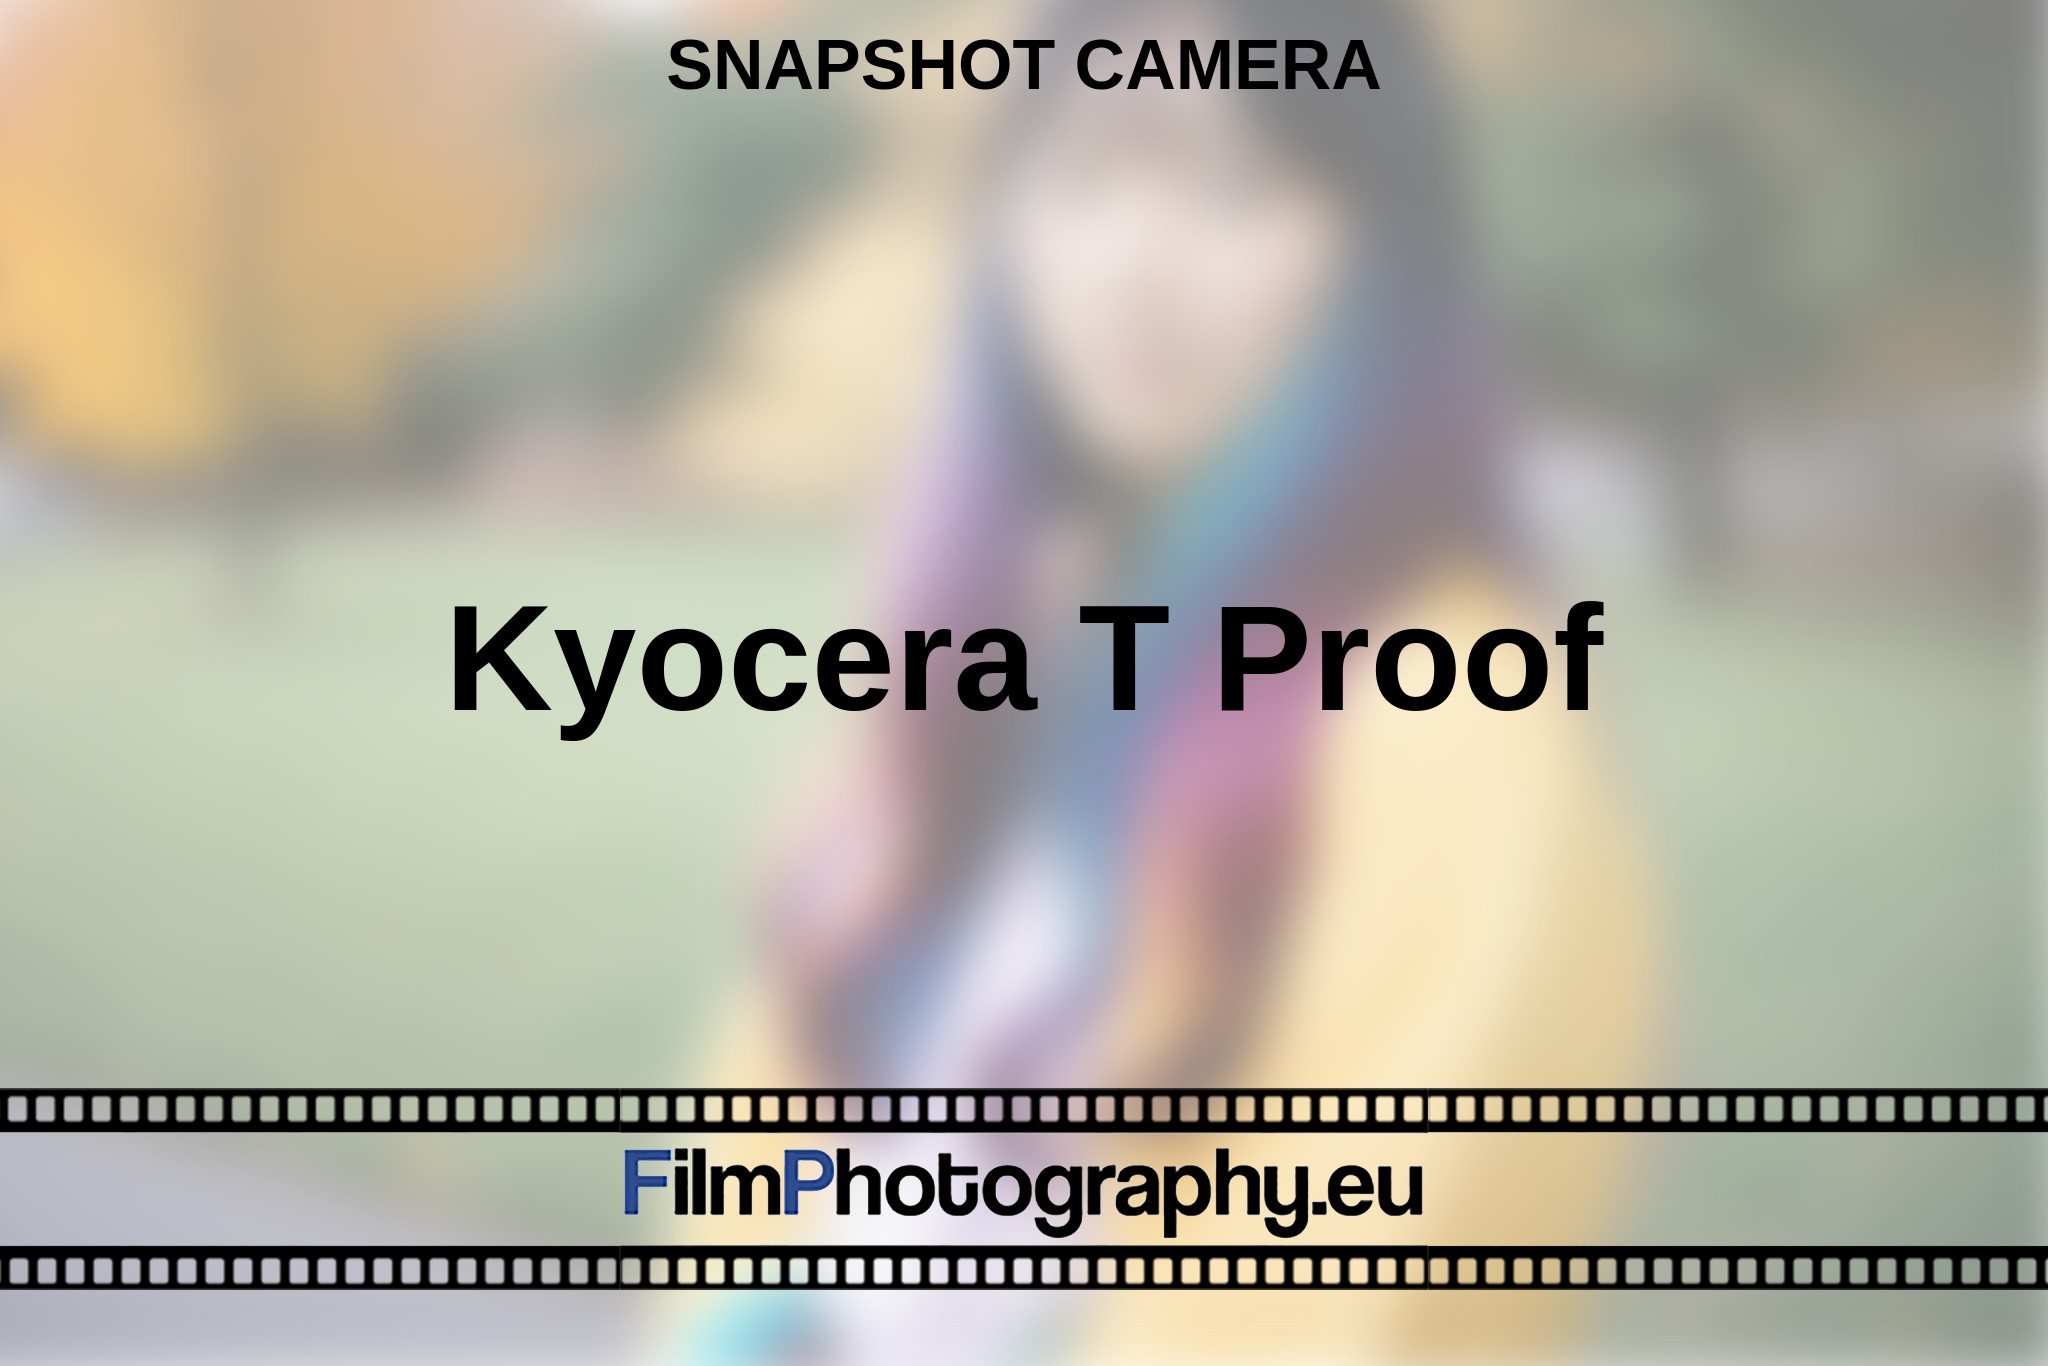 kyocera-t-proof-snapshot-camera-en-bnv.jpg